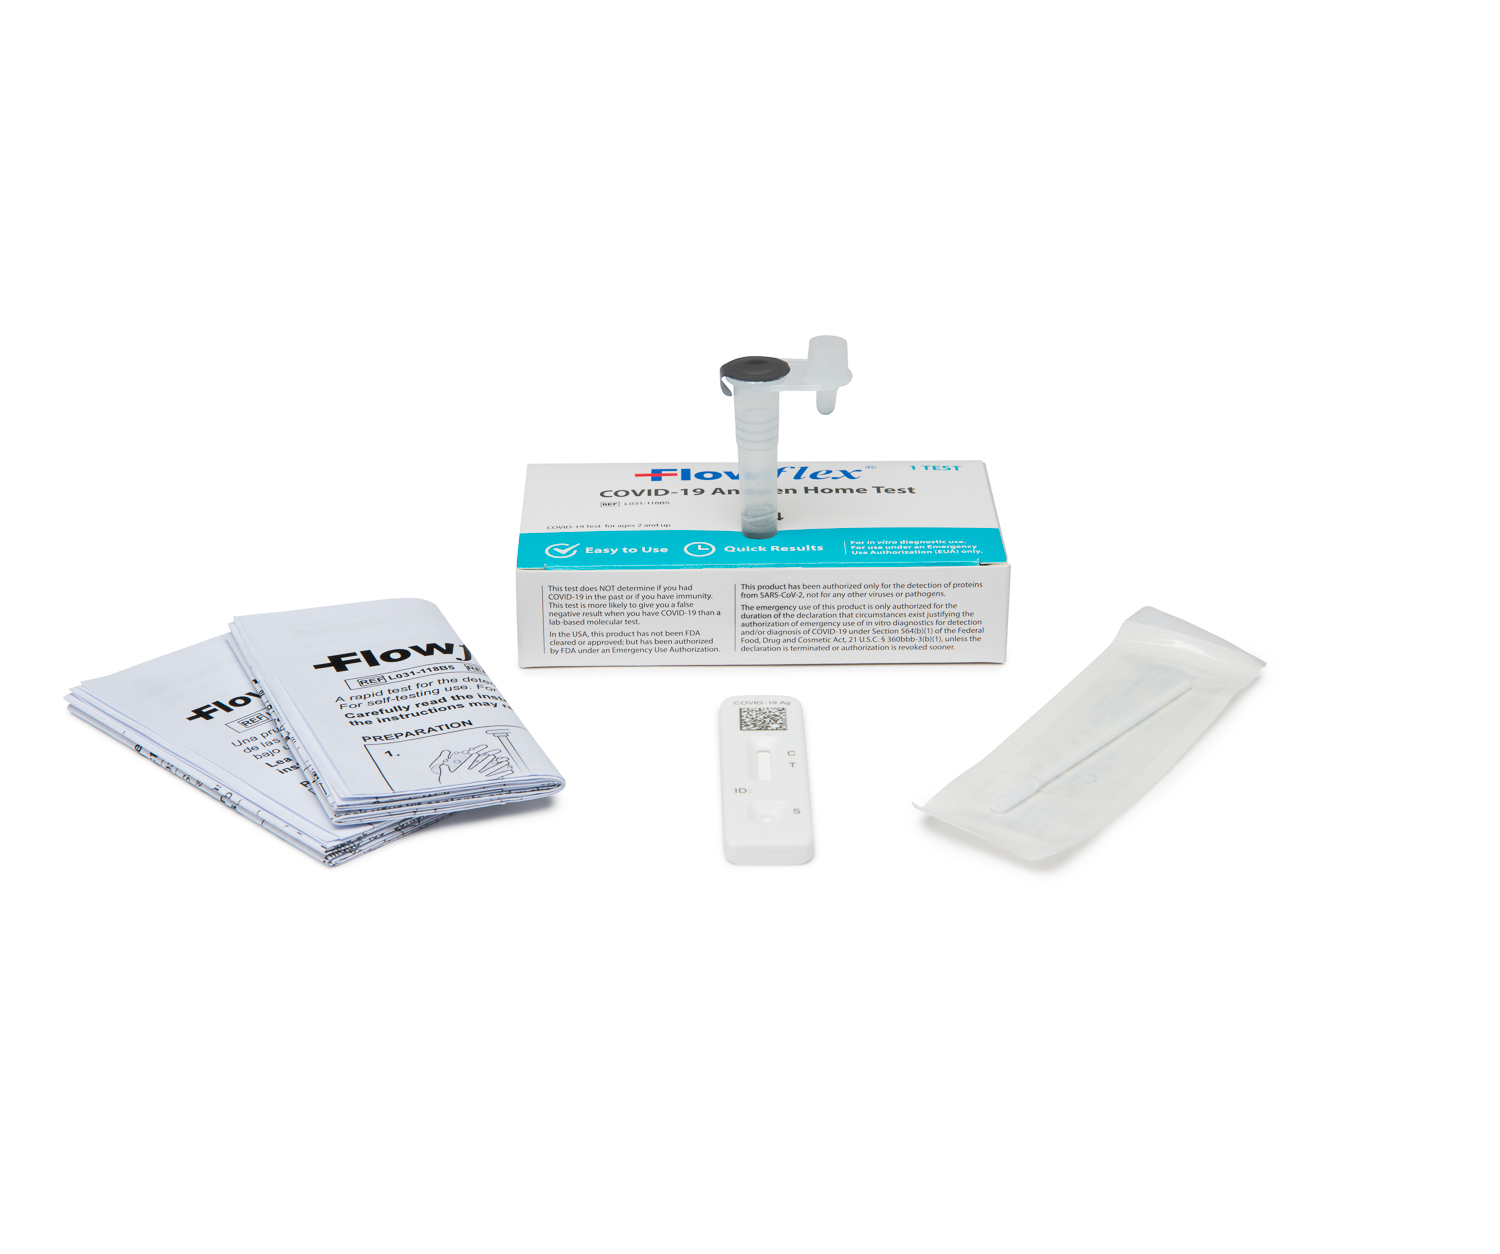 SARS-CoV-2 Flowflex COVID-19 Antigen Home Test